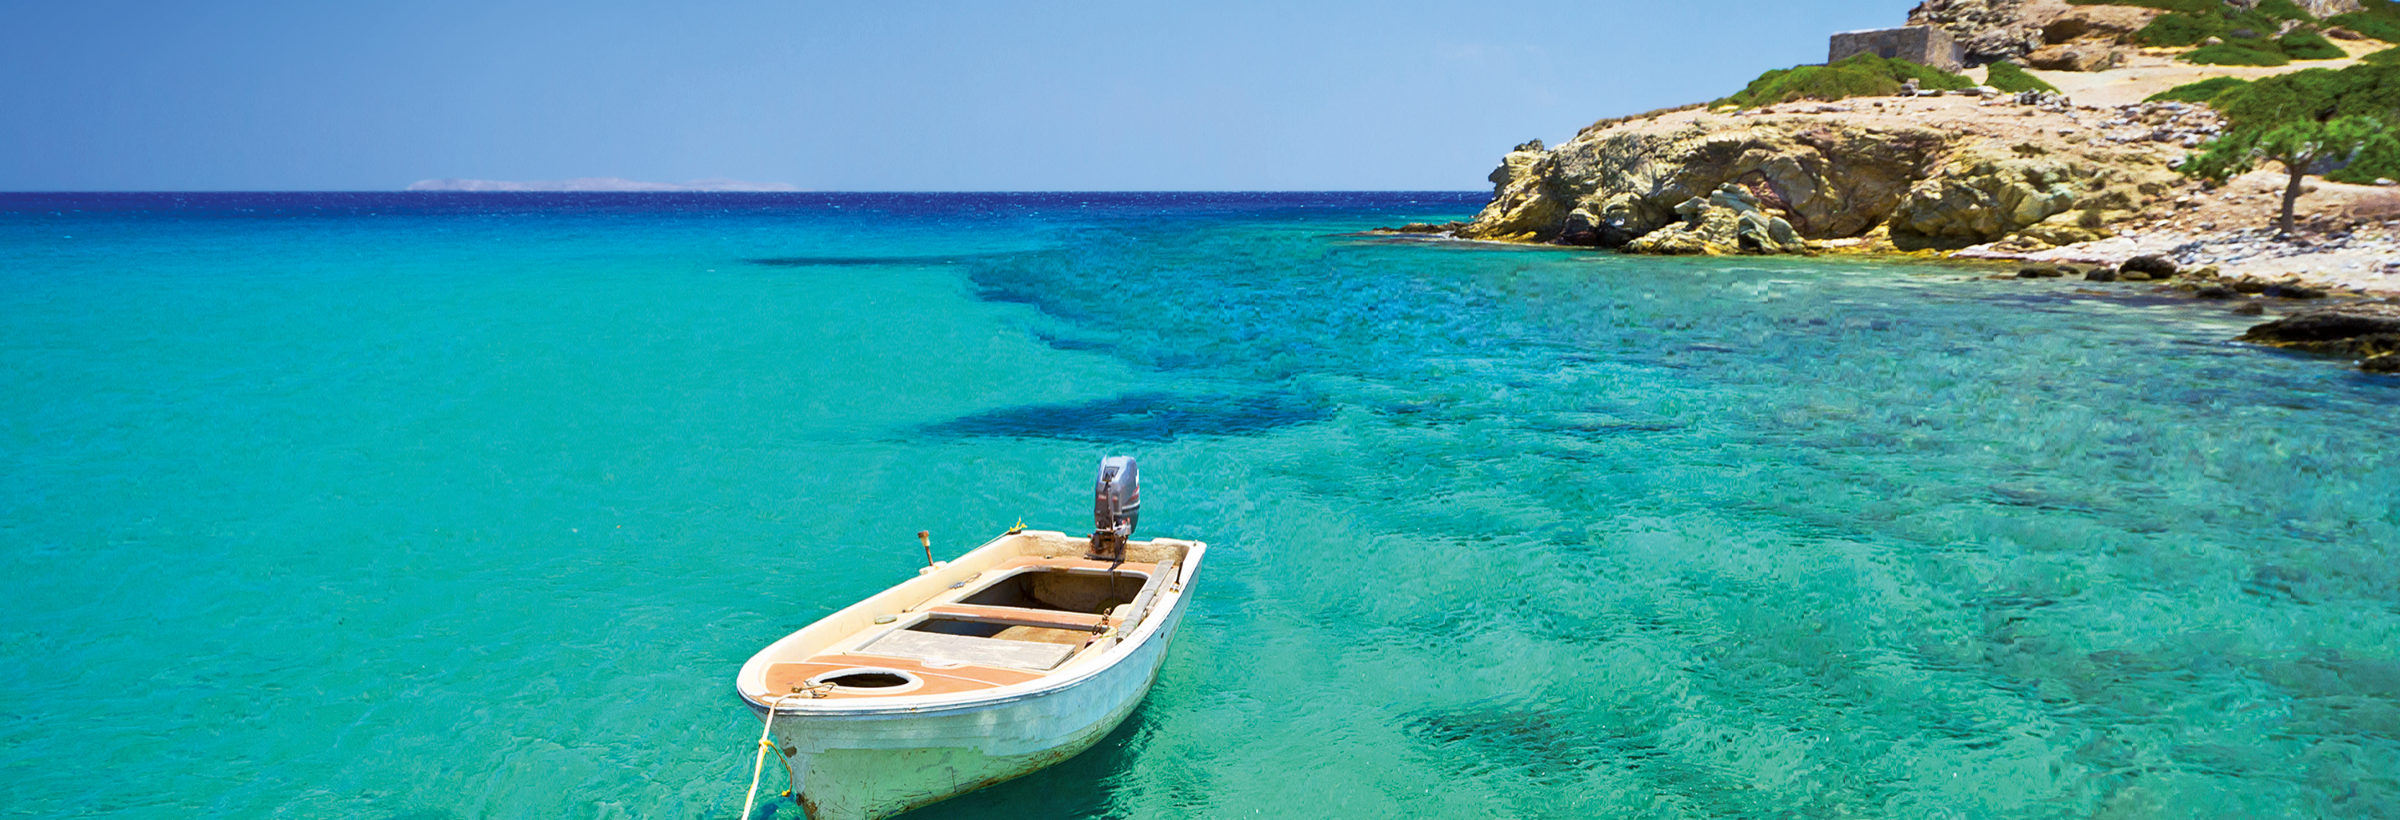 Kreta – Die Insel in der Ägäis